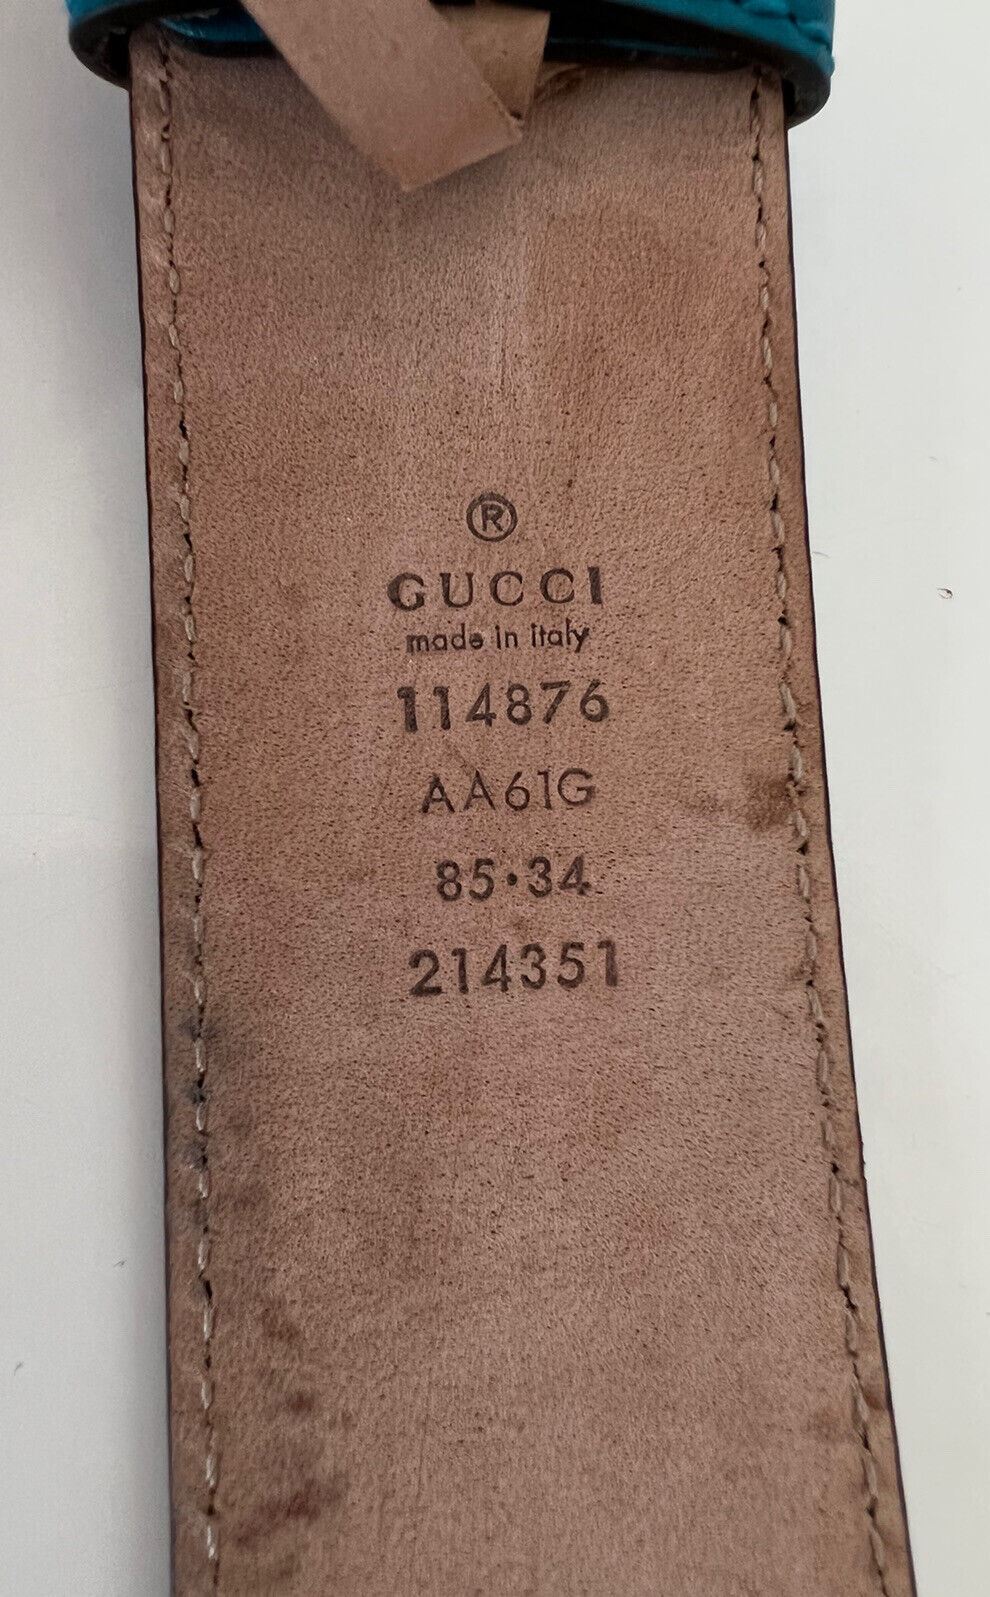 Gucci Herren-Gürtel aus türkisfarbenem Leder mit GG-Monogramm-Signatur, 85/34, 214351, Italien 